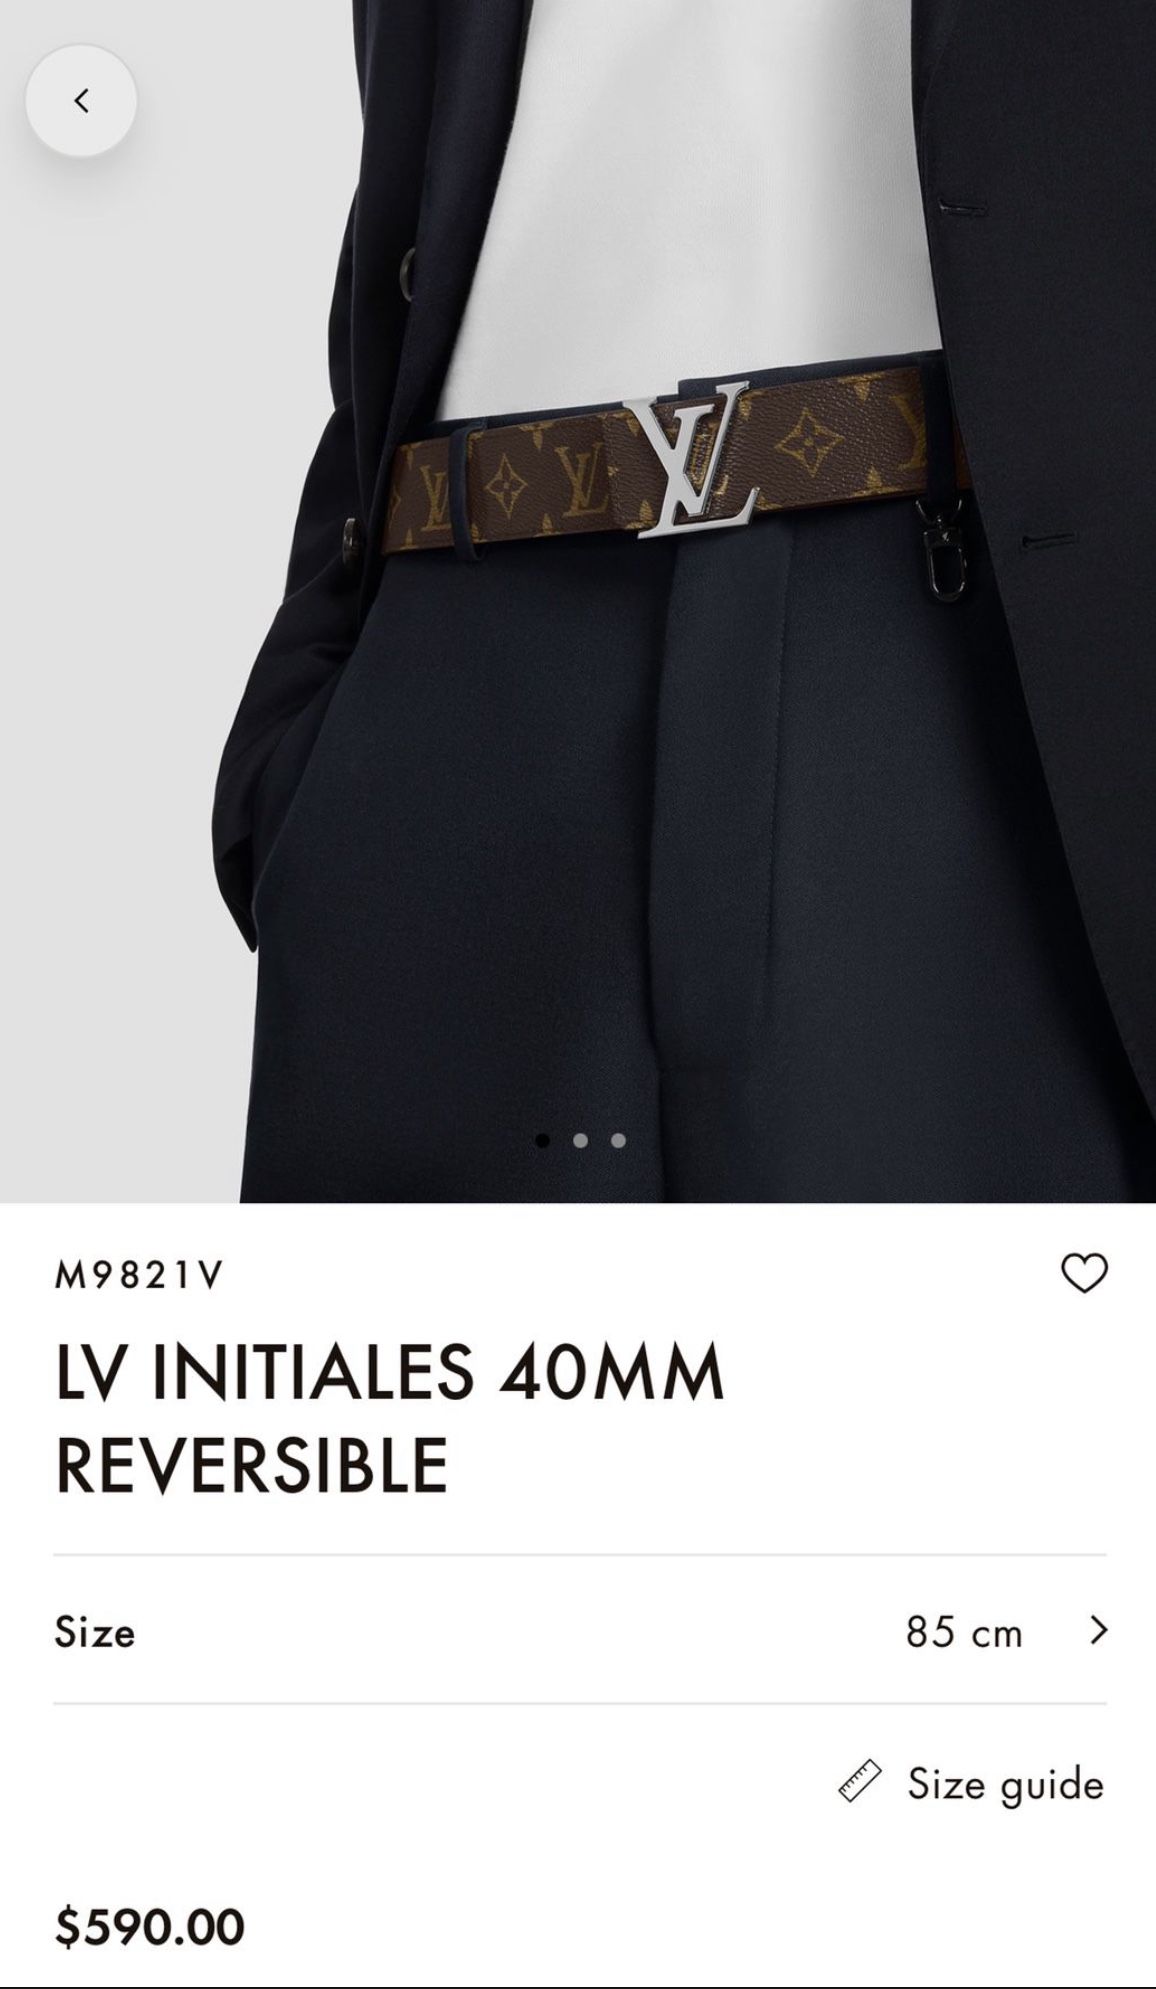 LV INITIALES 40MM REVERSIBLE M9821